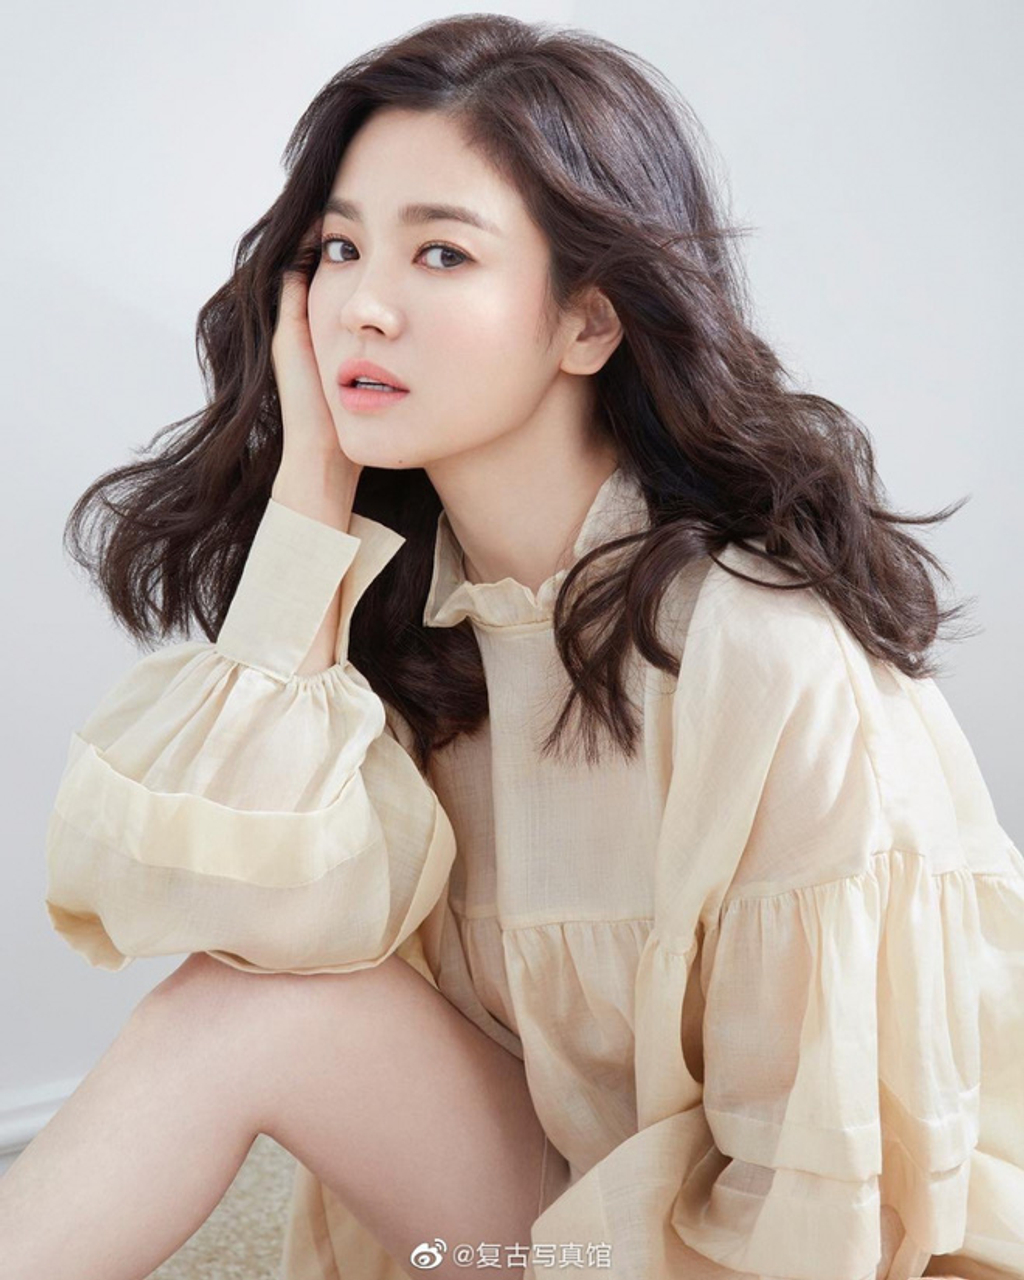 Song Hye Kyo vốn quen thuộc với style nhẹ nhàng, kín đáo, hiếm khi hở bạo phá cách như nhiều người đẹp khác